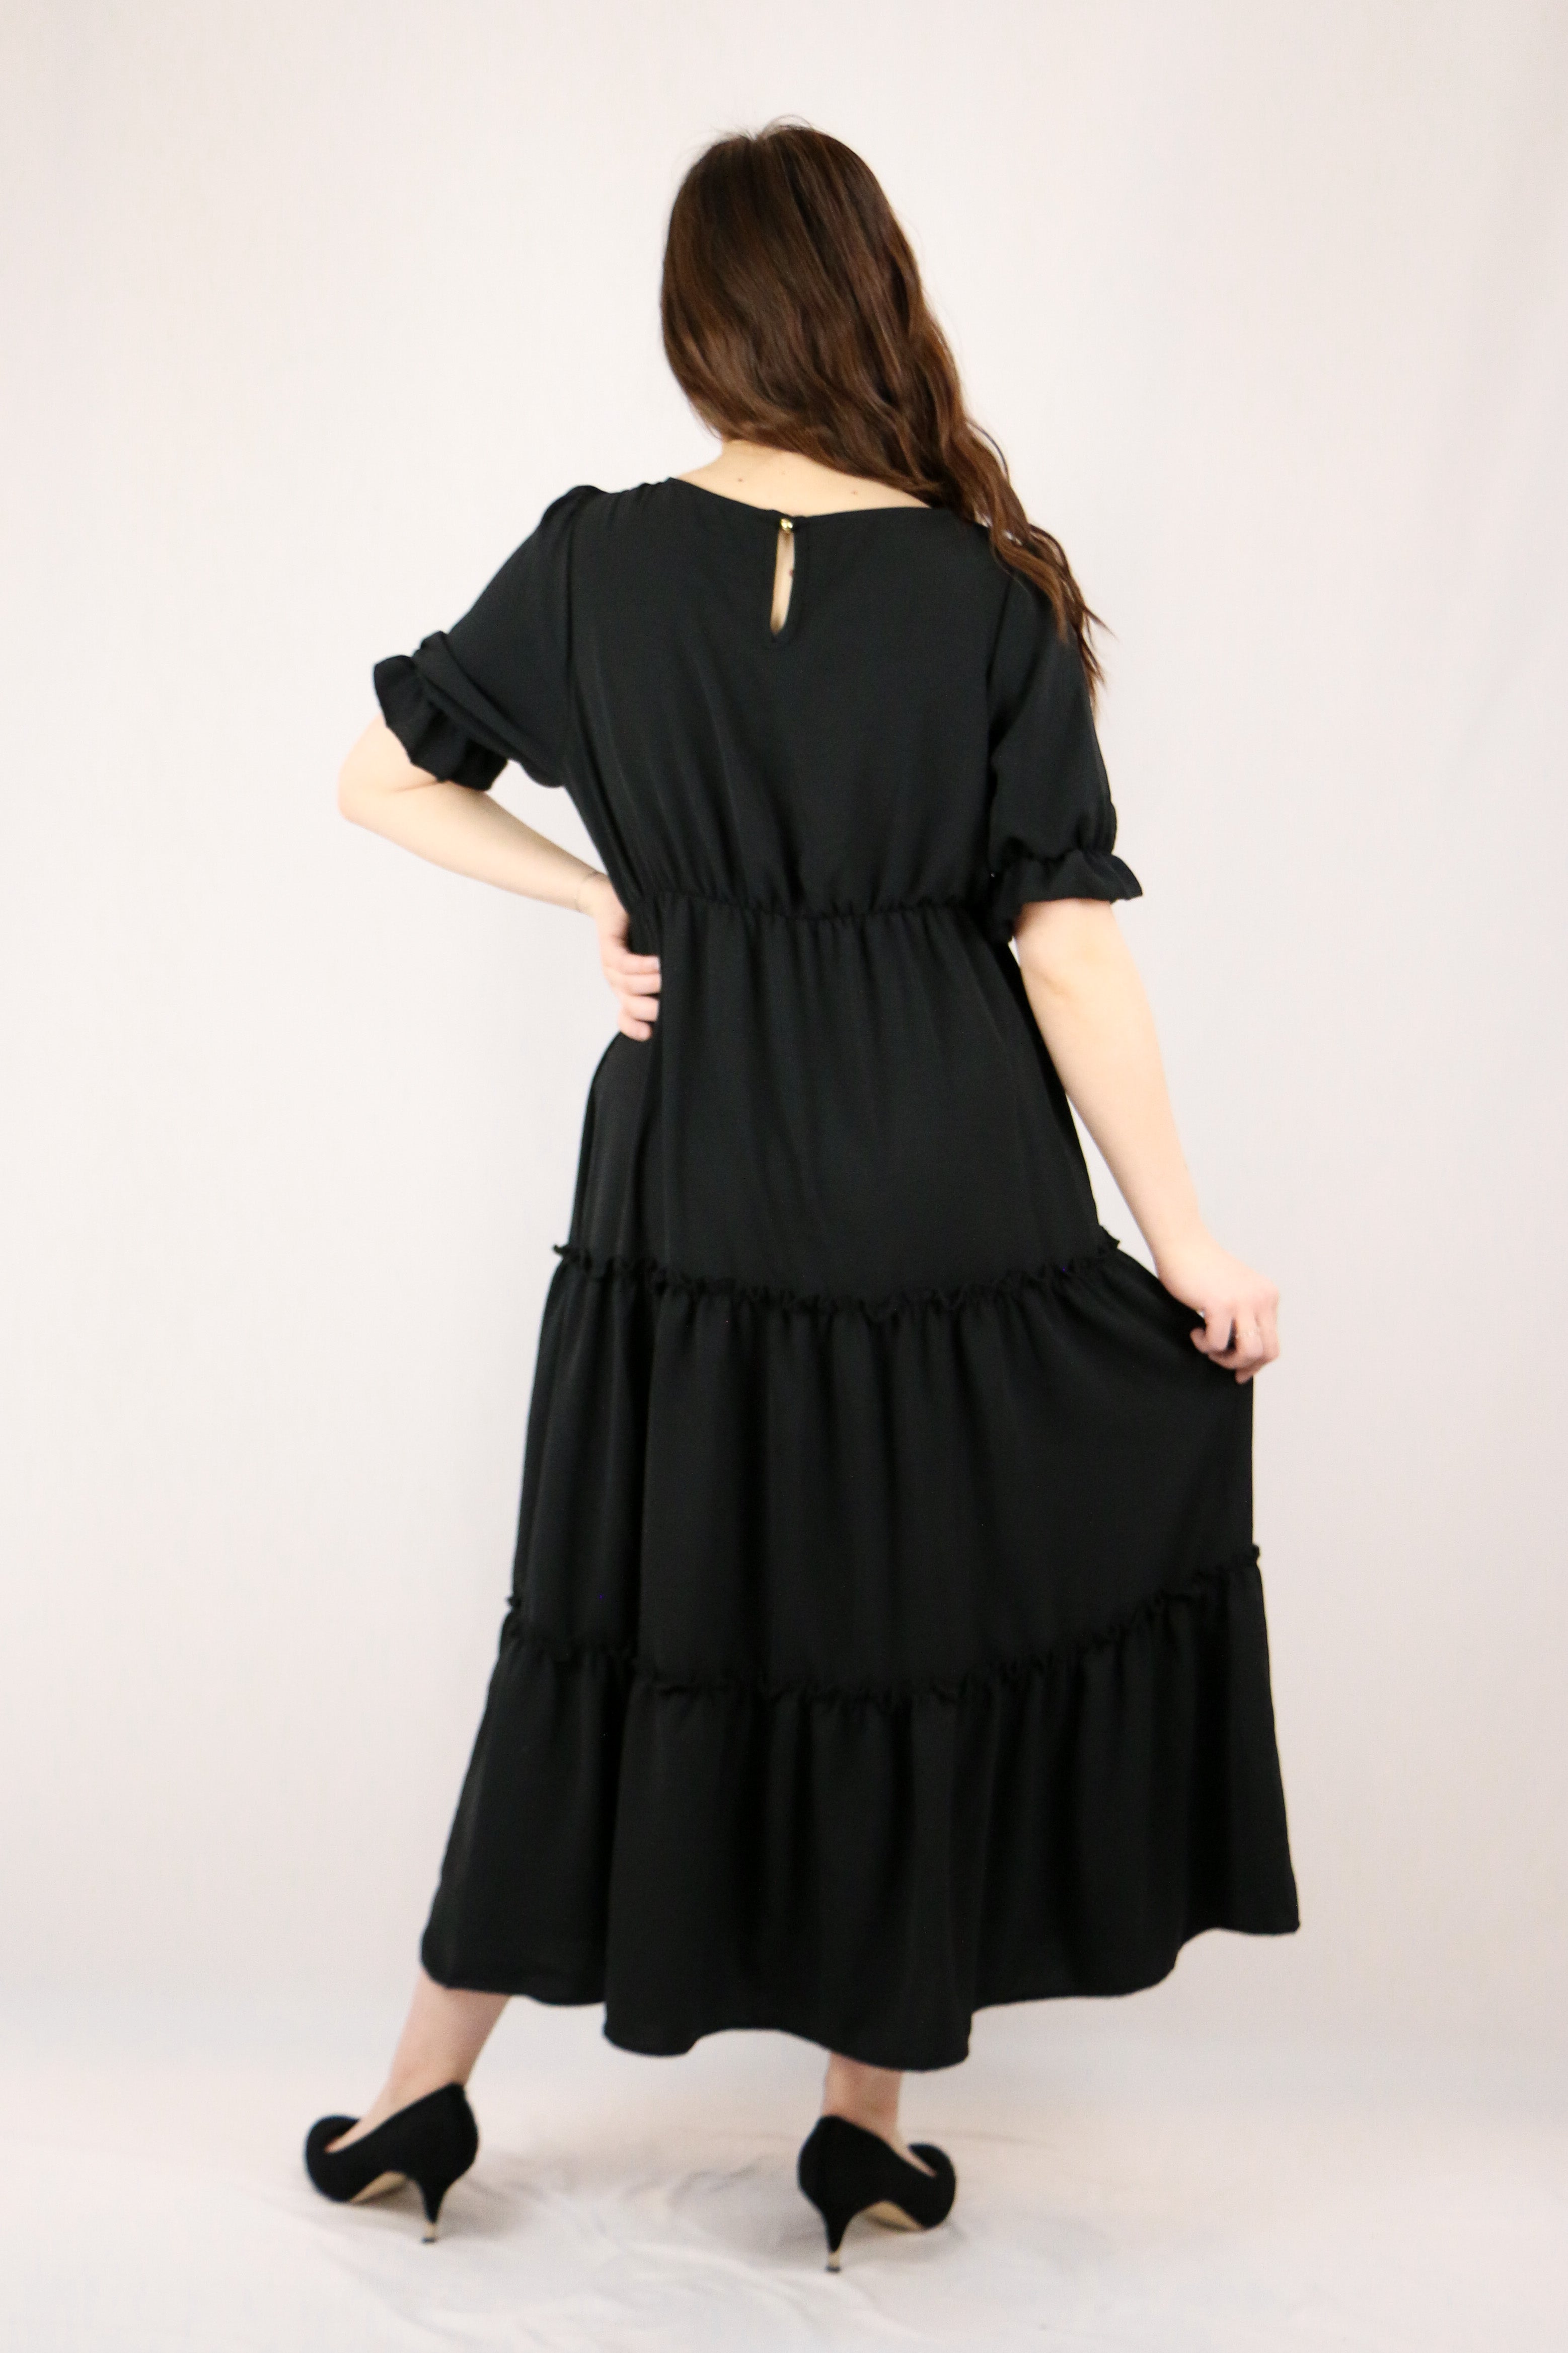 Finley Dress - Black